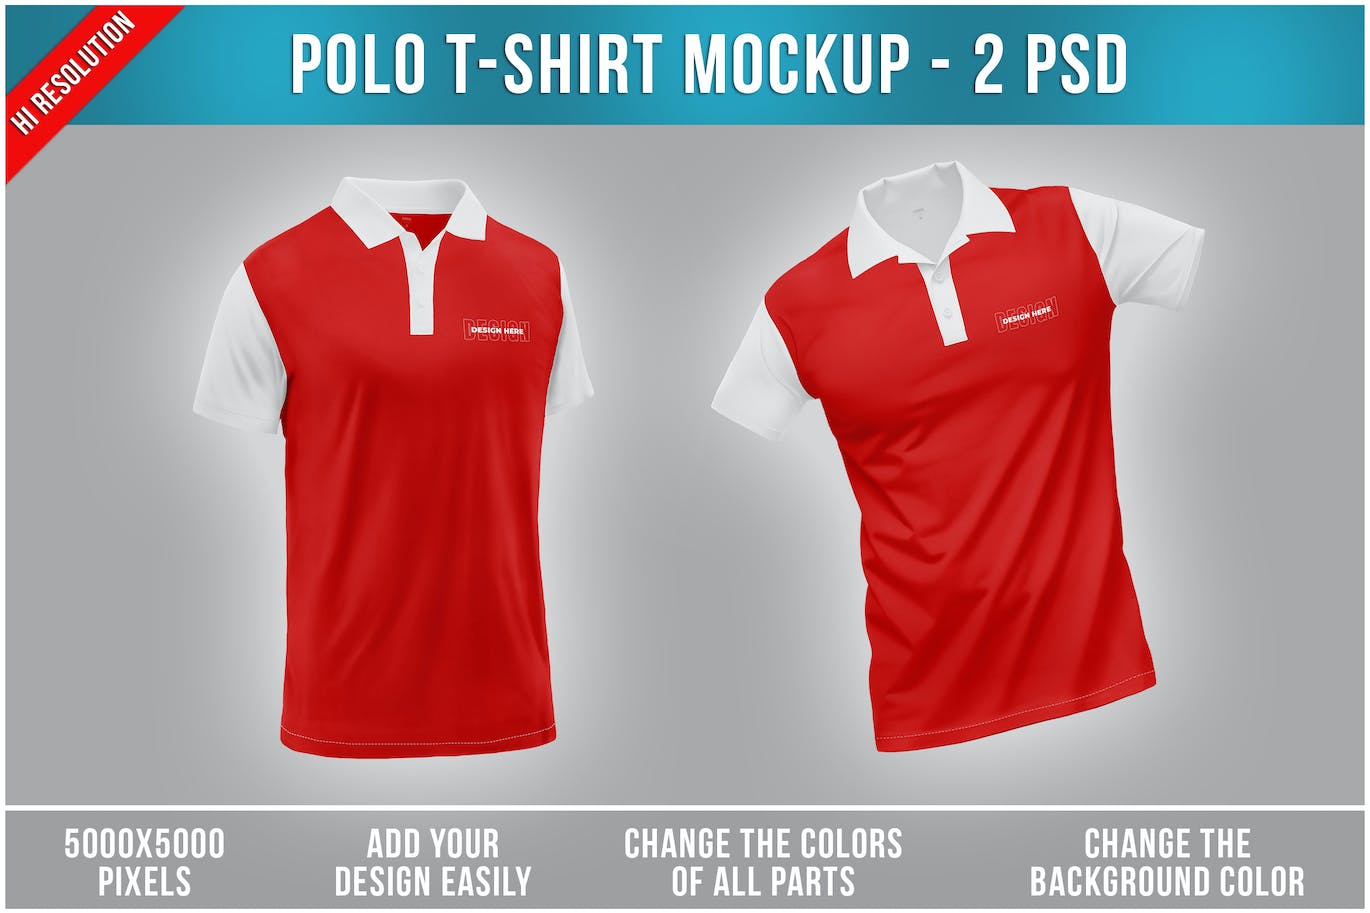 马球T恤服装品牌设计样机 Polo T-Shirt Mockup 样机素材 第1张